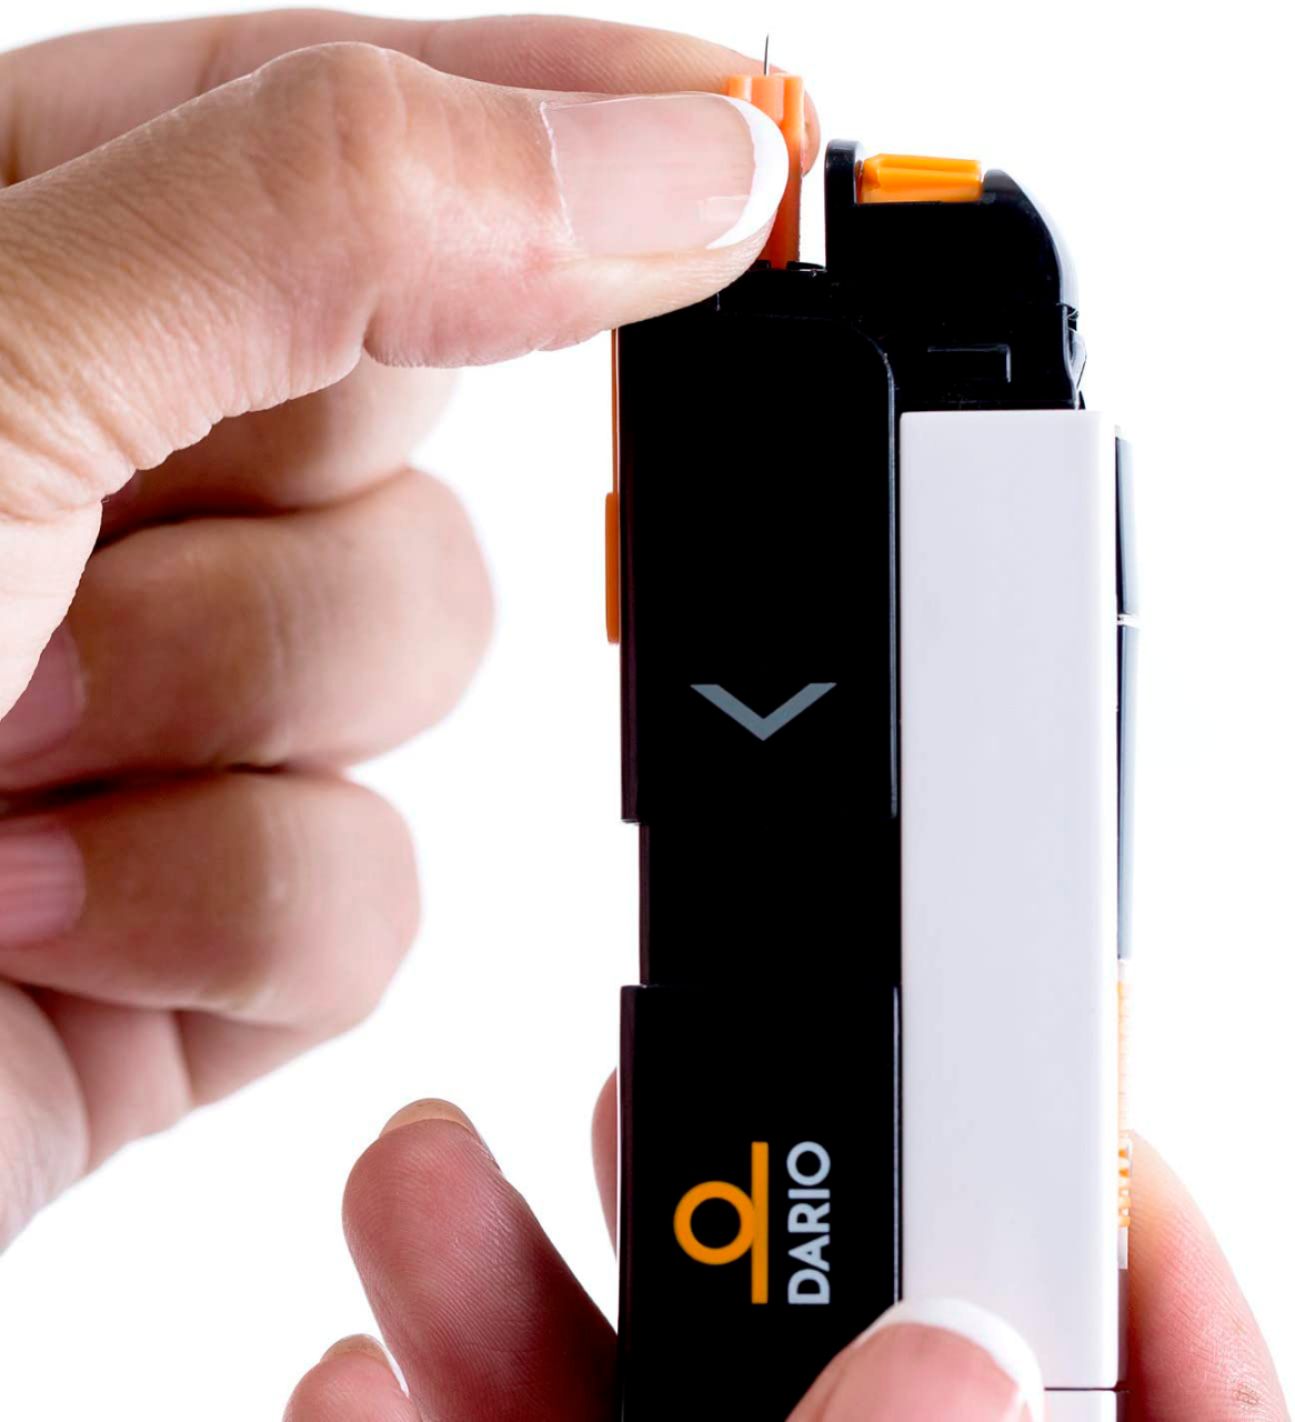 Dario Blood Glucose Monitoring Starter Kit